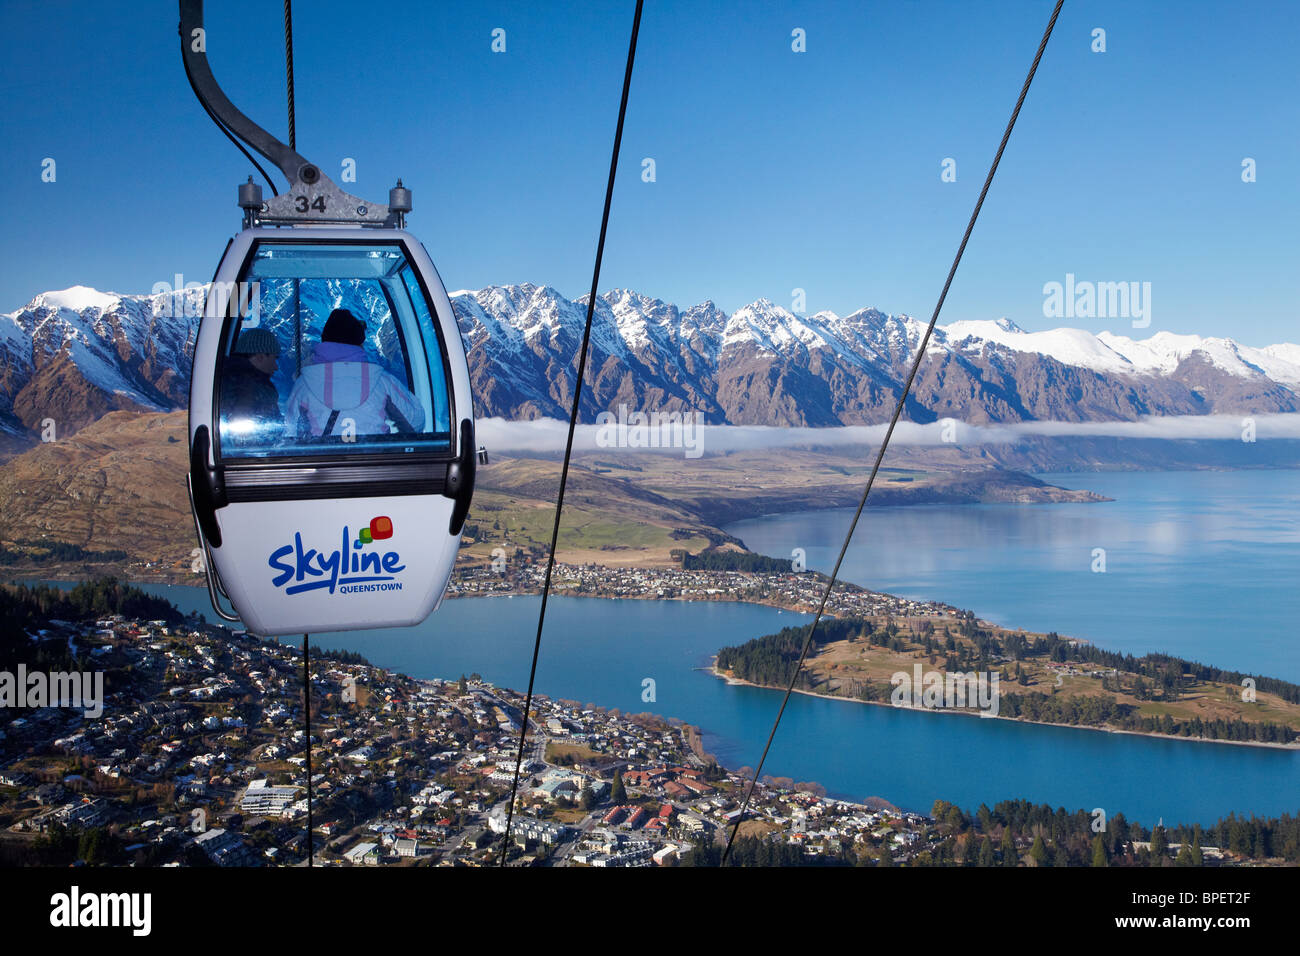 Skyline Gondola, le lac Wakatipu et les Remarkables, Queenstown, île du Sud, Nouvelle-Zélande Banque D'Images